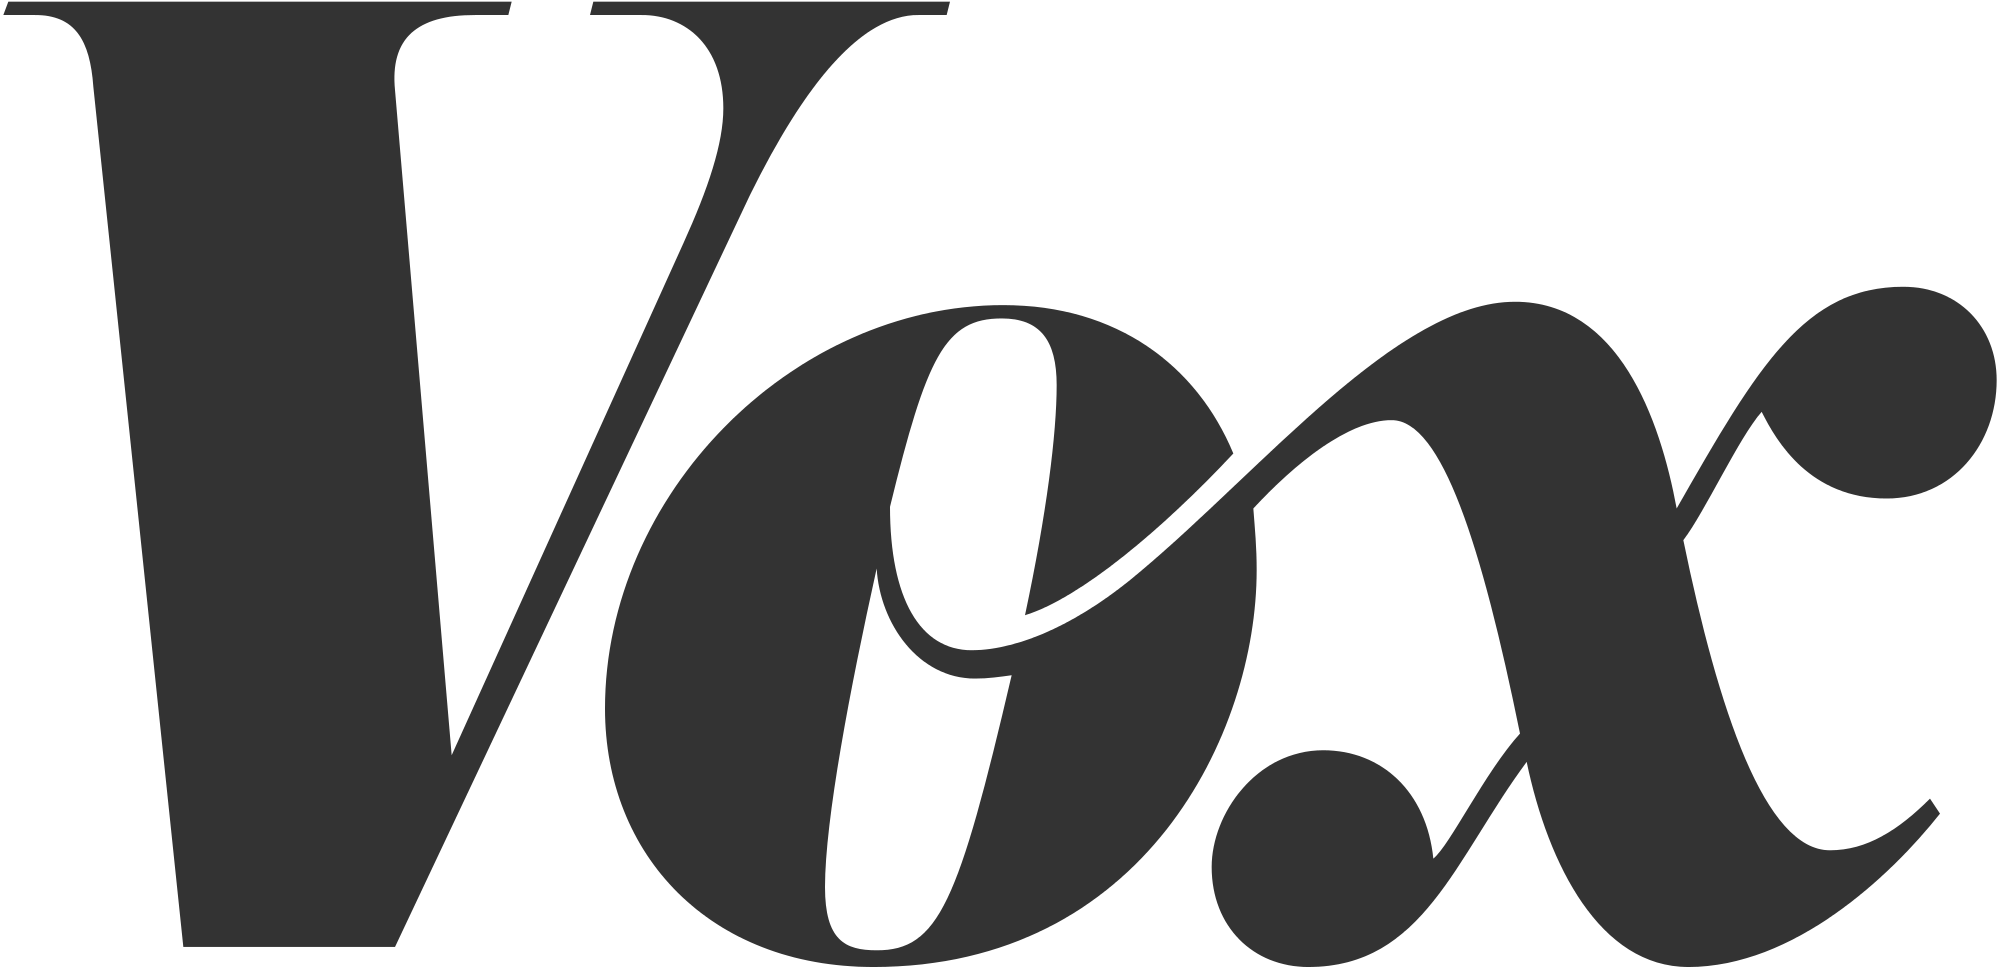 typografia - Minkä luokan fontti on Vox-logo? - Graafinen suunnittelu ...